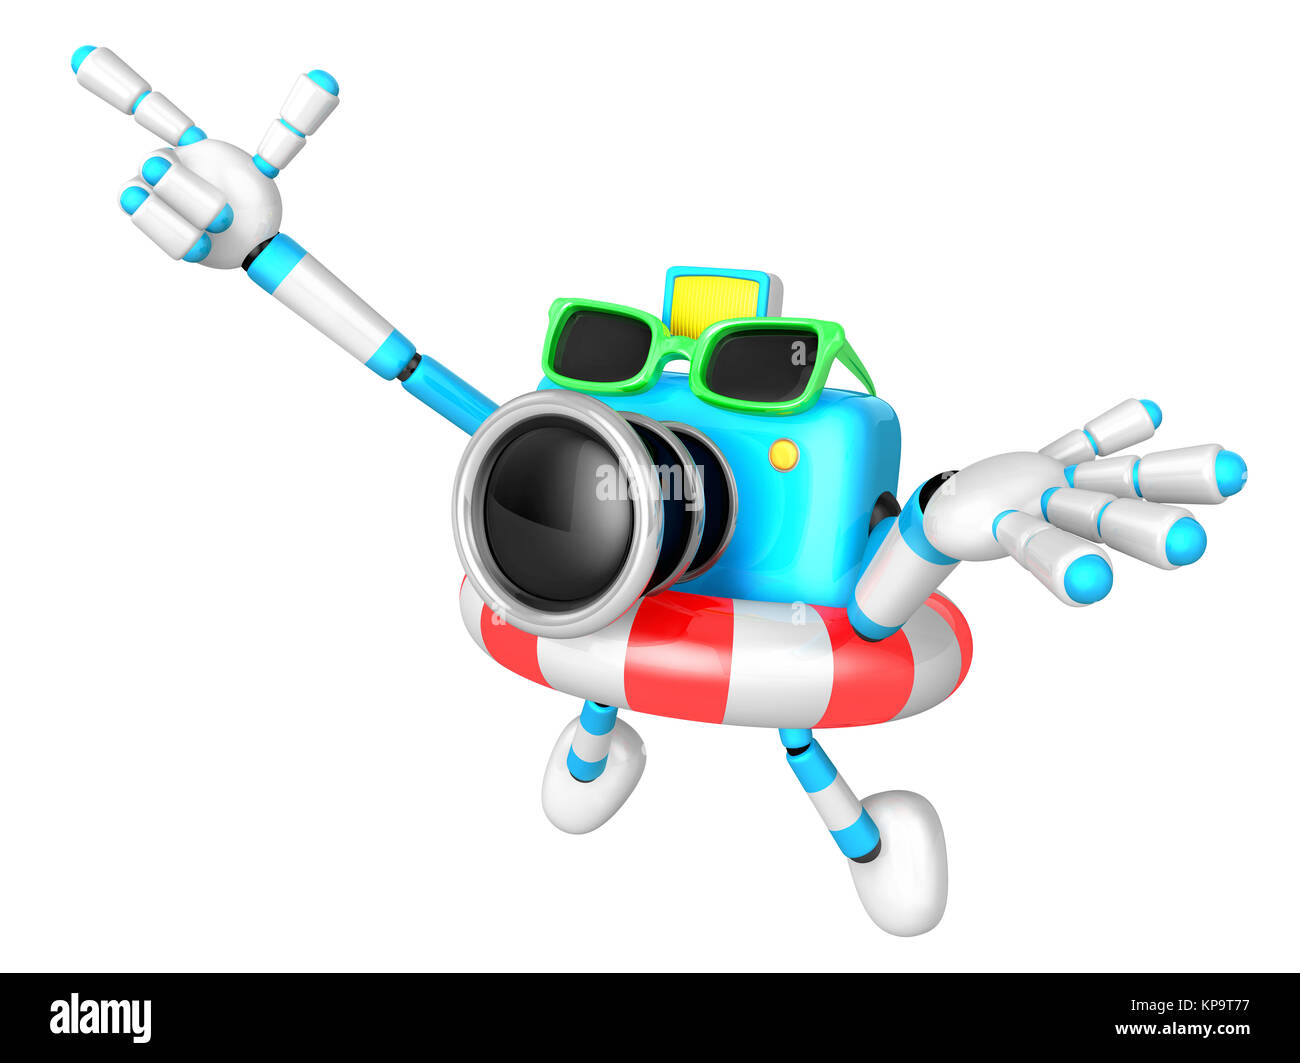 Sky fertigen Kamera Charakter springen im Gummiring. Erstellen Sie 3D  Kamera-Roboter-Serie Stockfotografie - Alamy